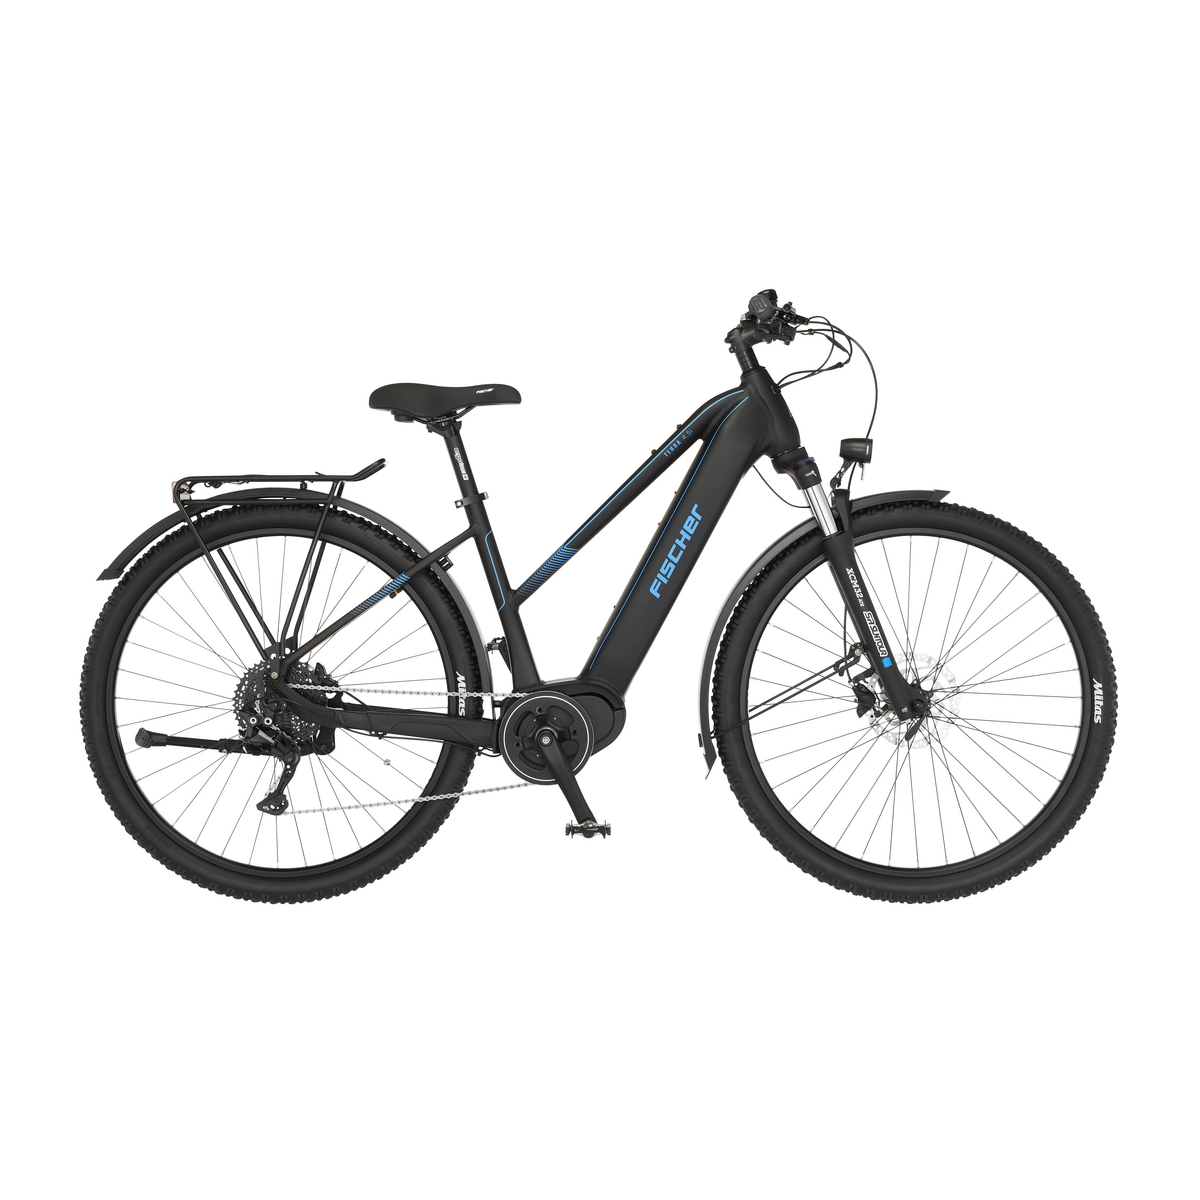 FISCHER TERRA 4.5i E-Bike - schwarz matt, 29 Zoll, RH 45 cm, 522 Wh  Generalüberholt | E-Bikes Trekking Outlet | E-Bikes - Outlet | Outlet |  Sale%